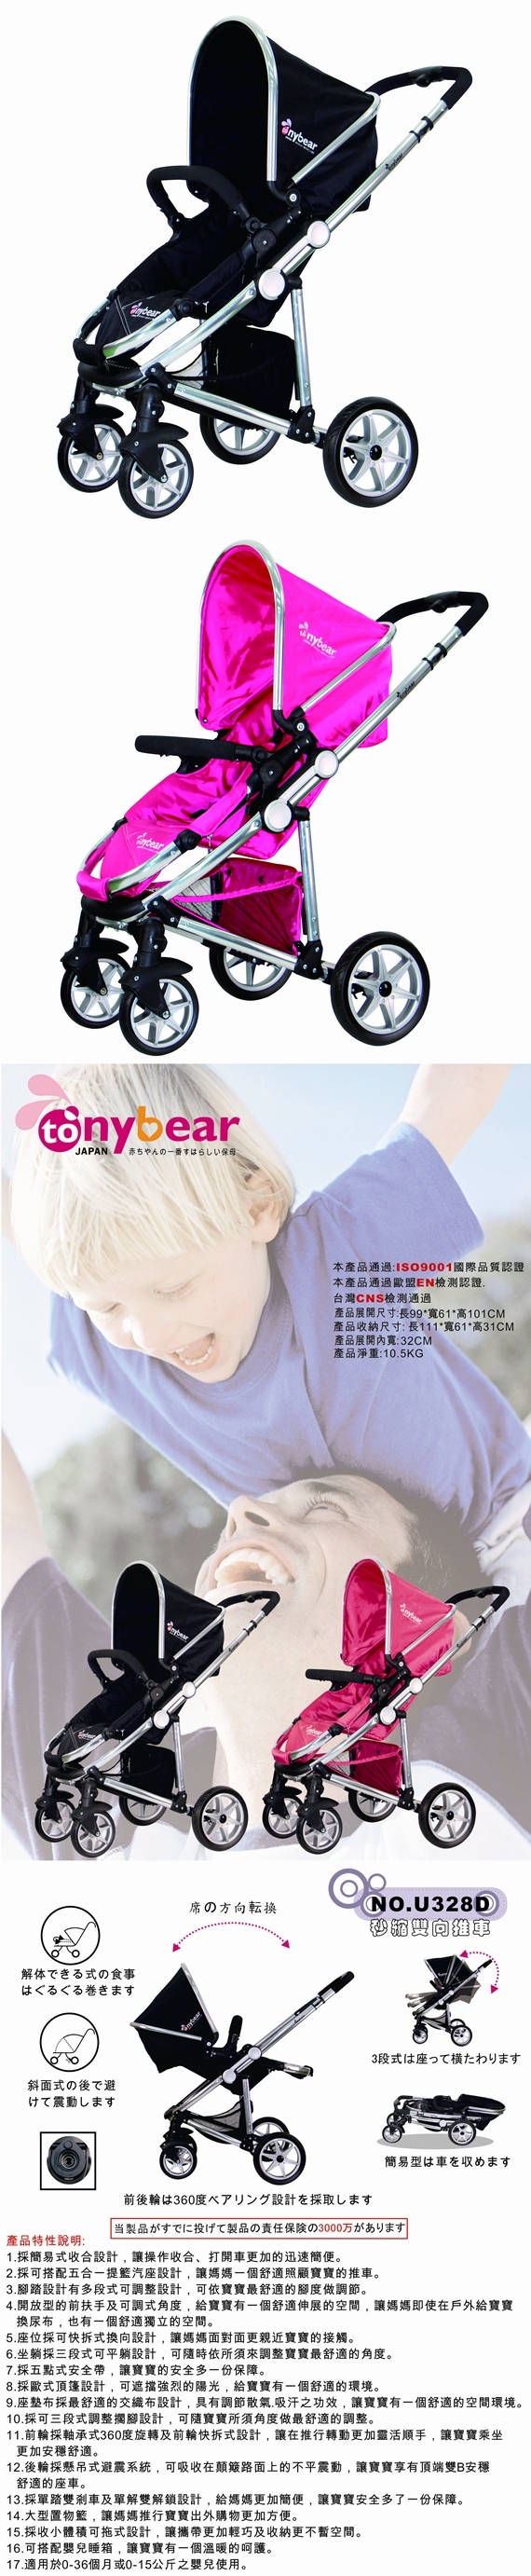 湯尼熊TonyBear-U型RV雙向嬰兒推車(黑色/桃紅)U328D+嬰兒睡箱